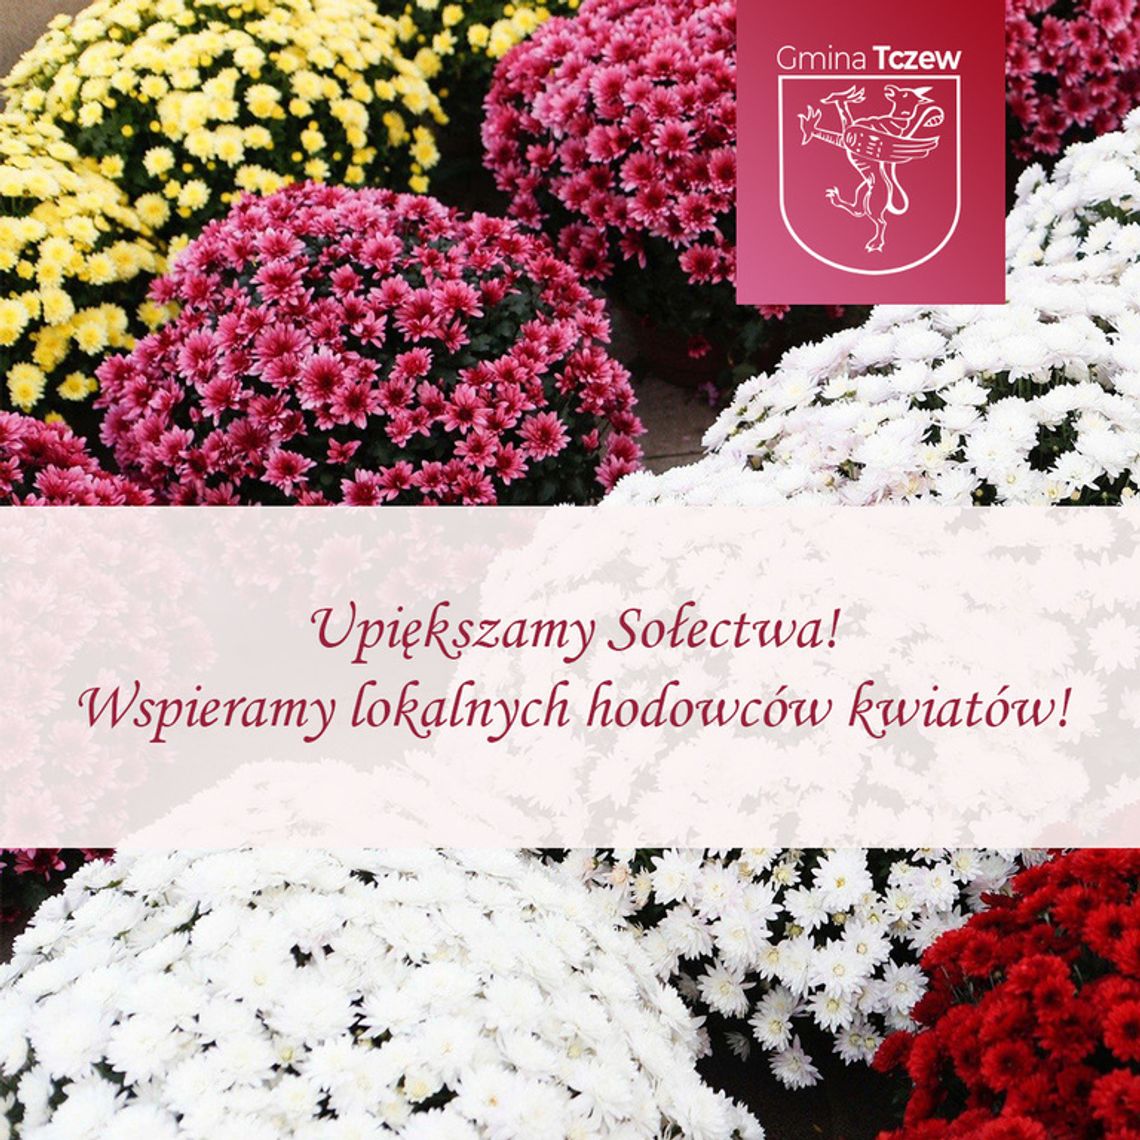 Gmina Tczew wspiera lokalnych hodowców kwiatów